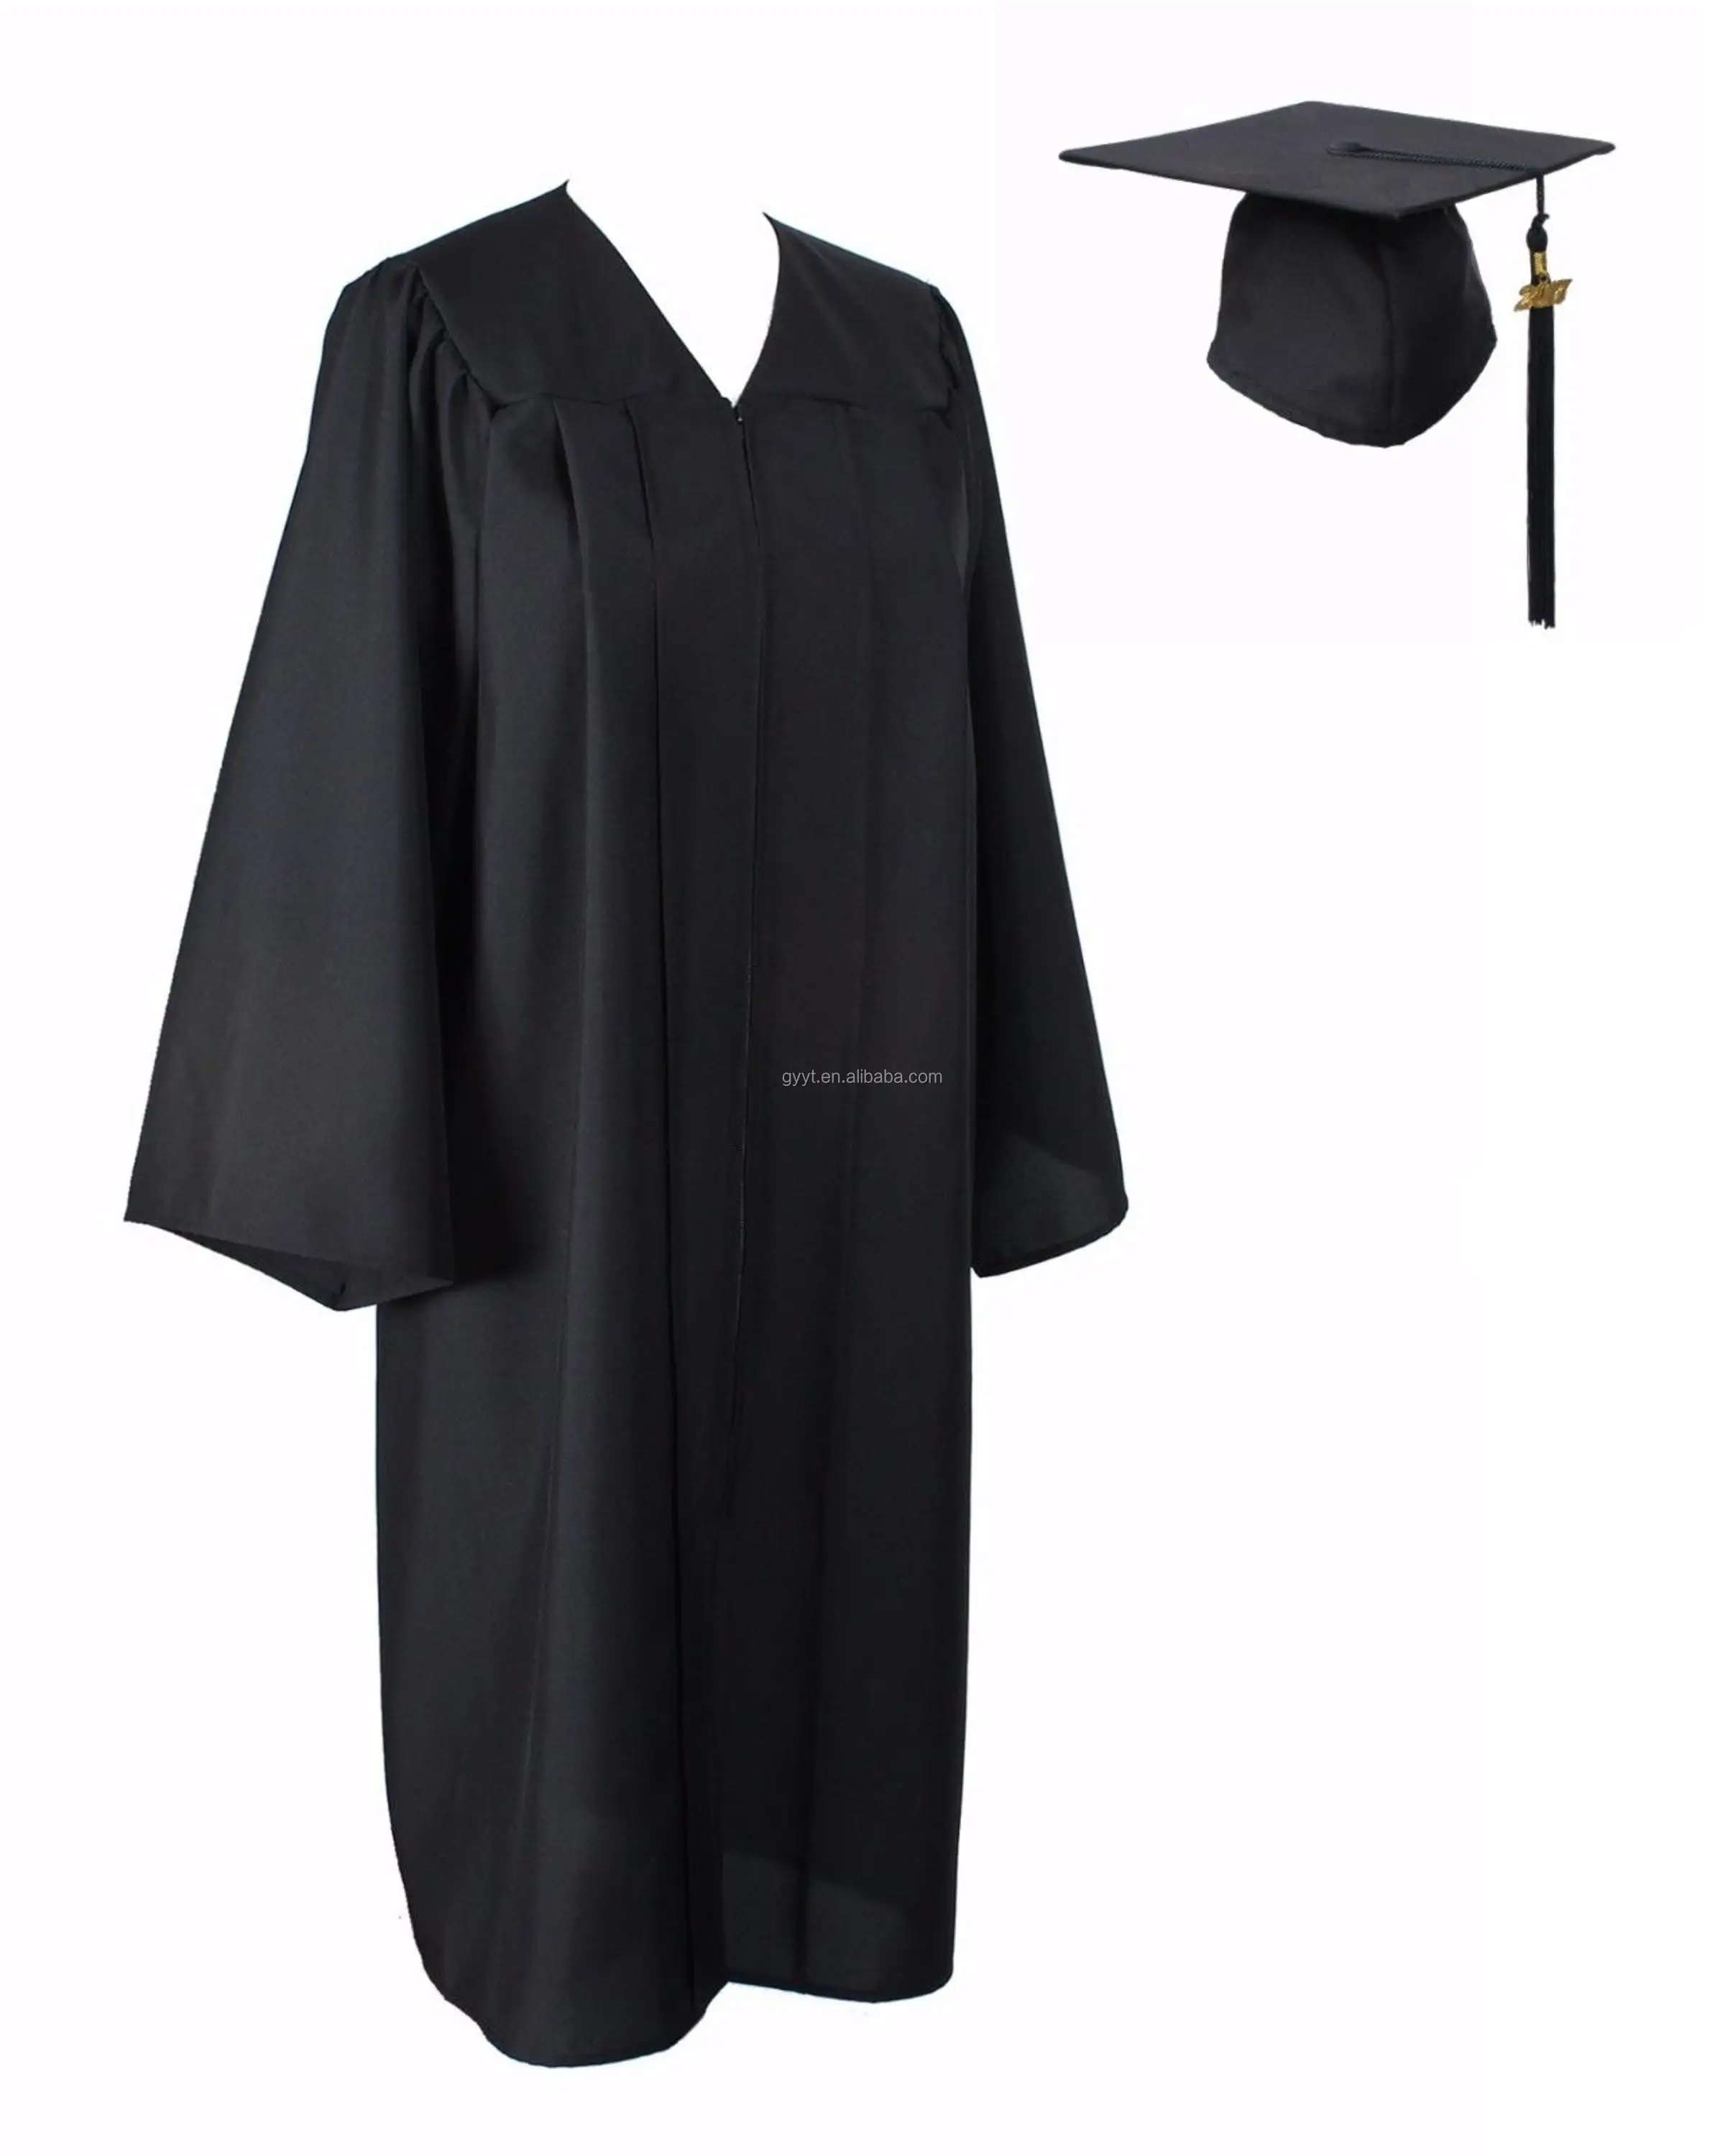 Unisex volwassen bachelor college graduatietoga schooluniform